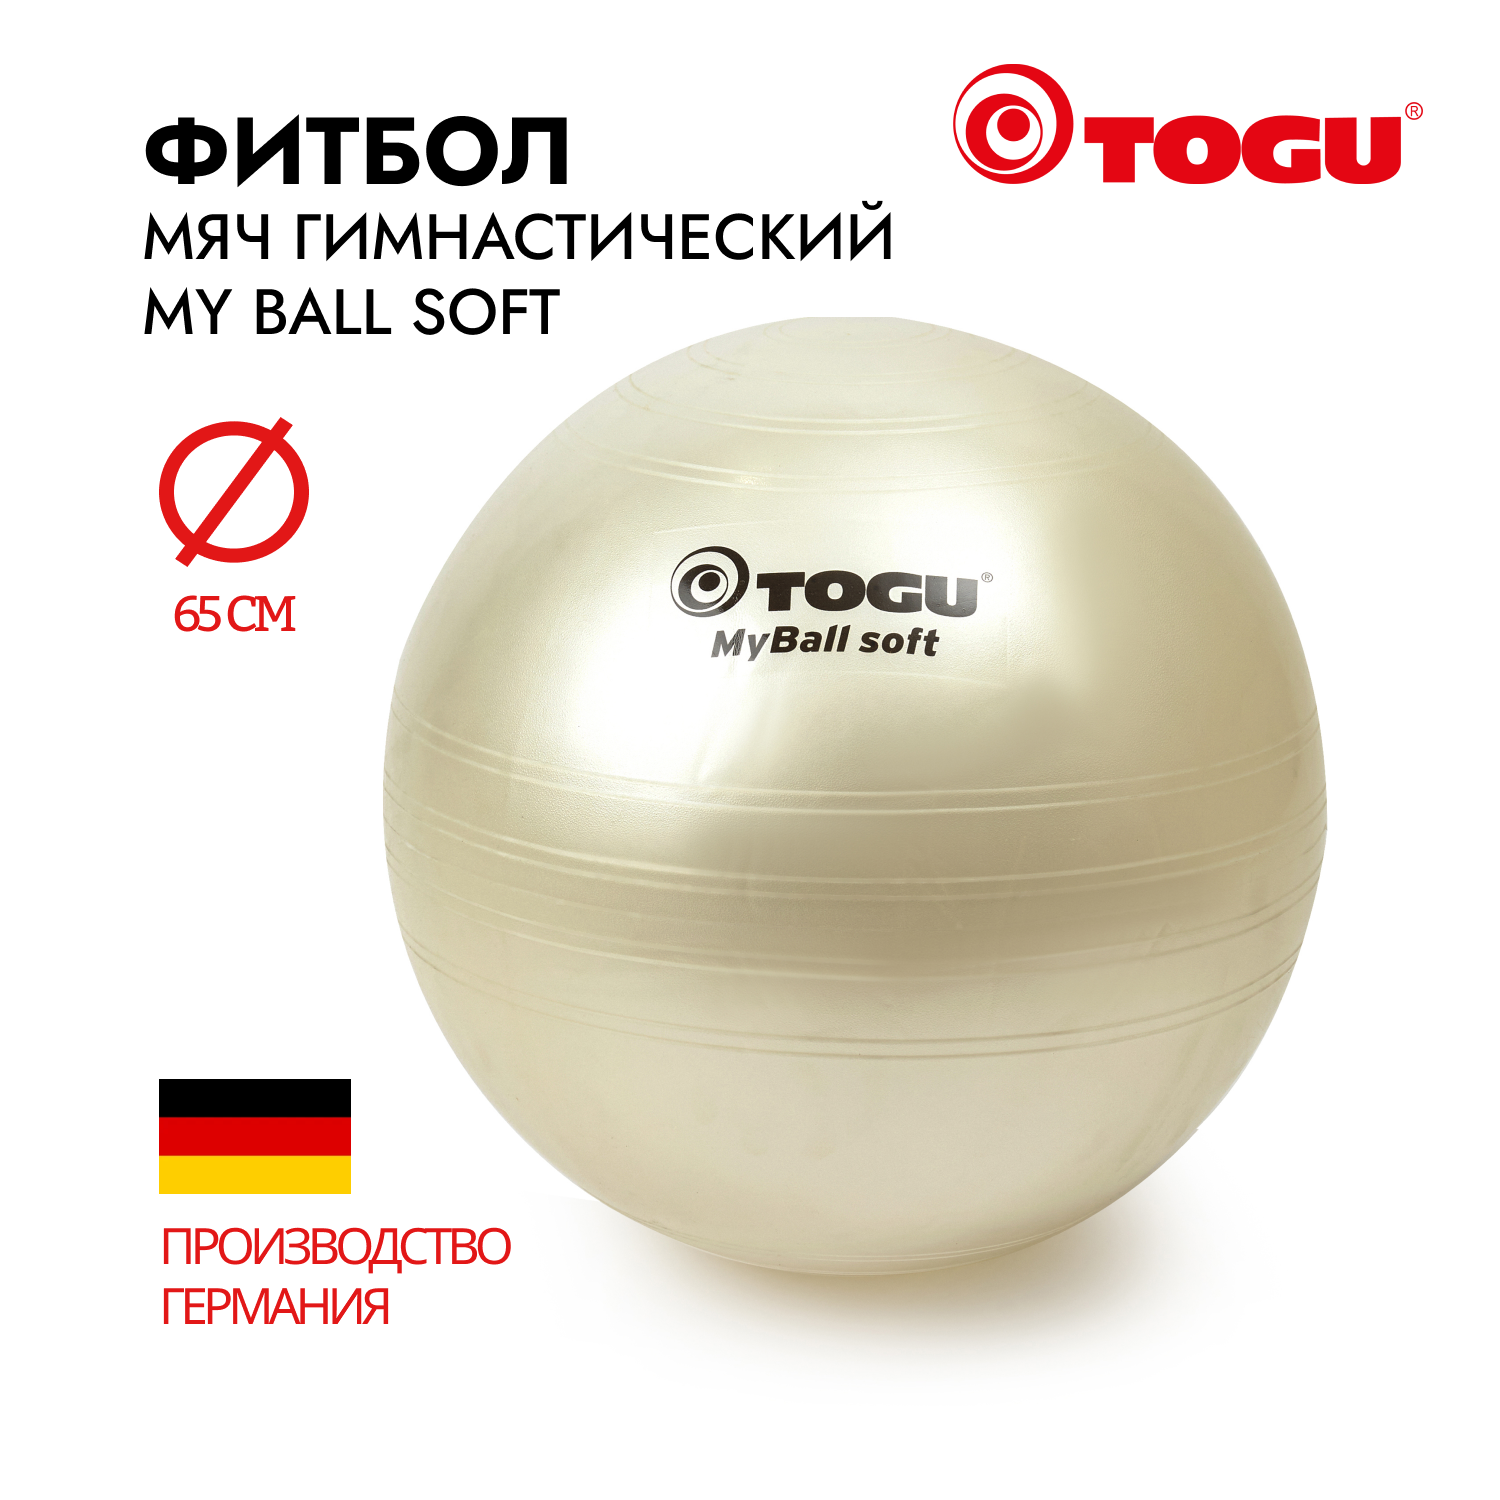 Мяч надувной спортивный / Фитбол гимнастический TOGU My Ball Soft, диаметр 65 см, белый перламутр